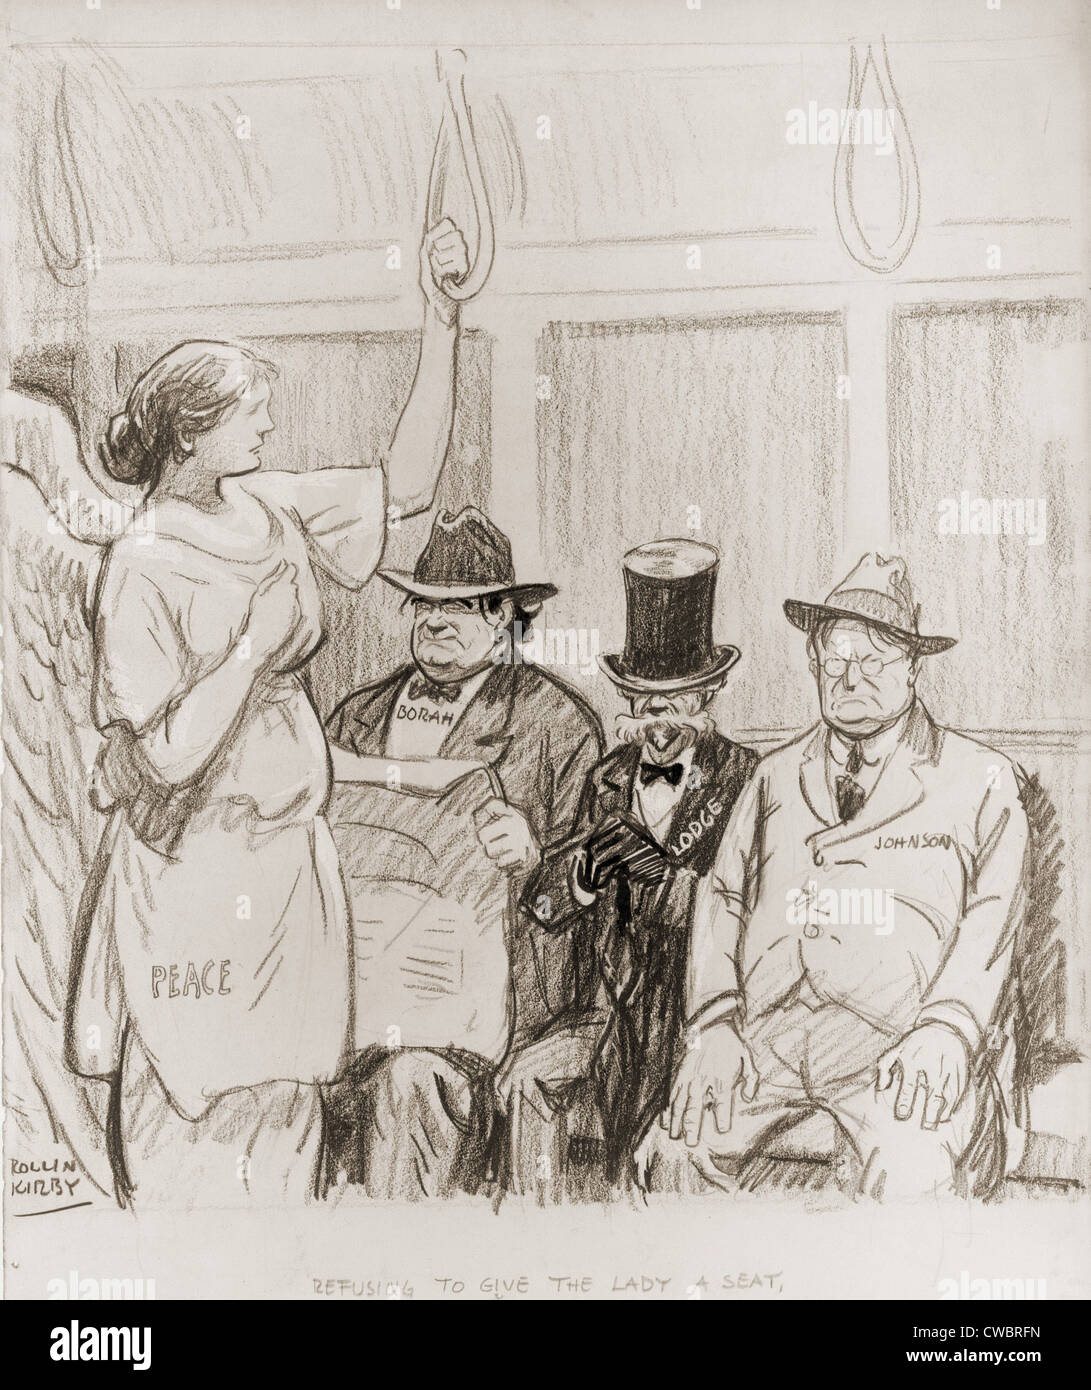 Rifiutando di dare alla signora un sedile. Senatori Borah, Lodge e Johnson occupano il bus sedi come la figura della pace sta. Il Foto Stock